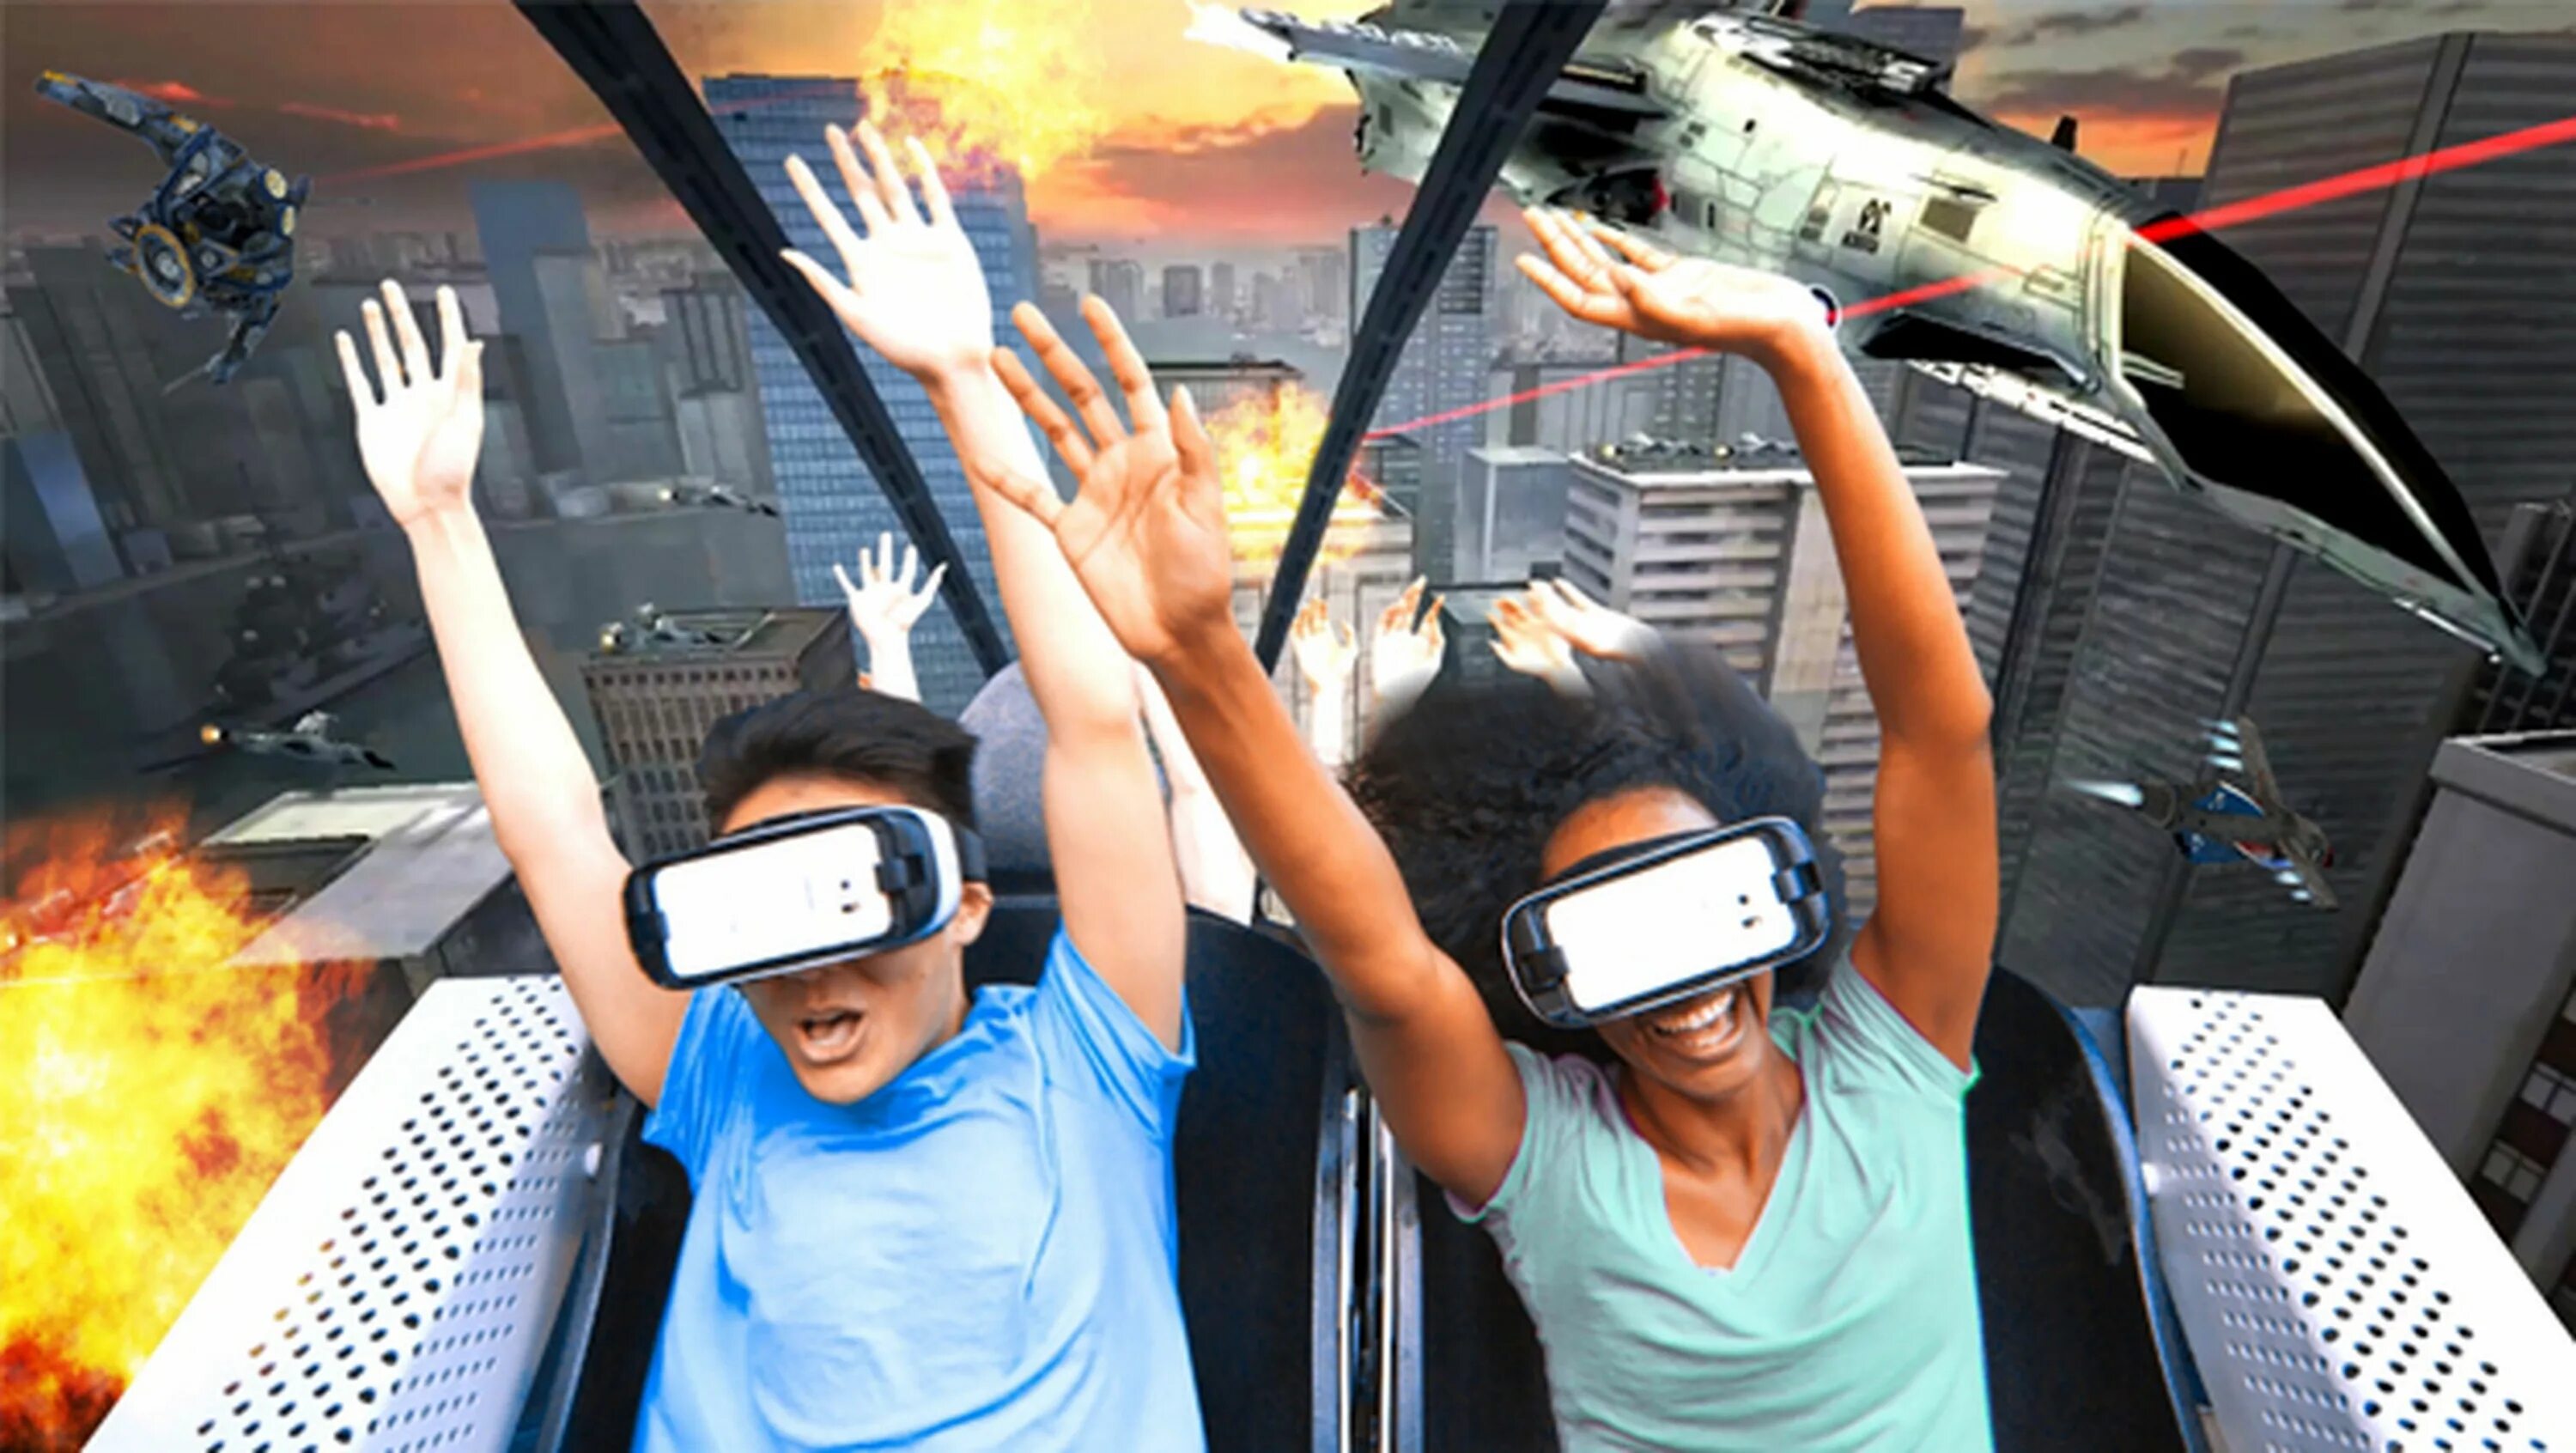 Технологии развлечений. VR аттракцион Окулус 2. 9d VR аттракцион. VR 9d 360 аттракцион. Виртуальная реальность в развлечениях.